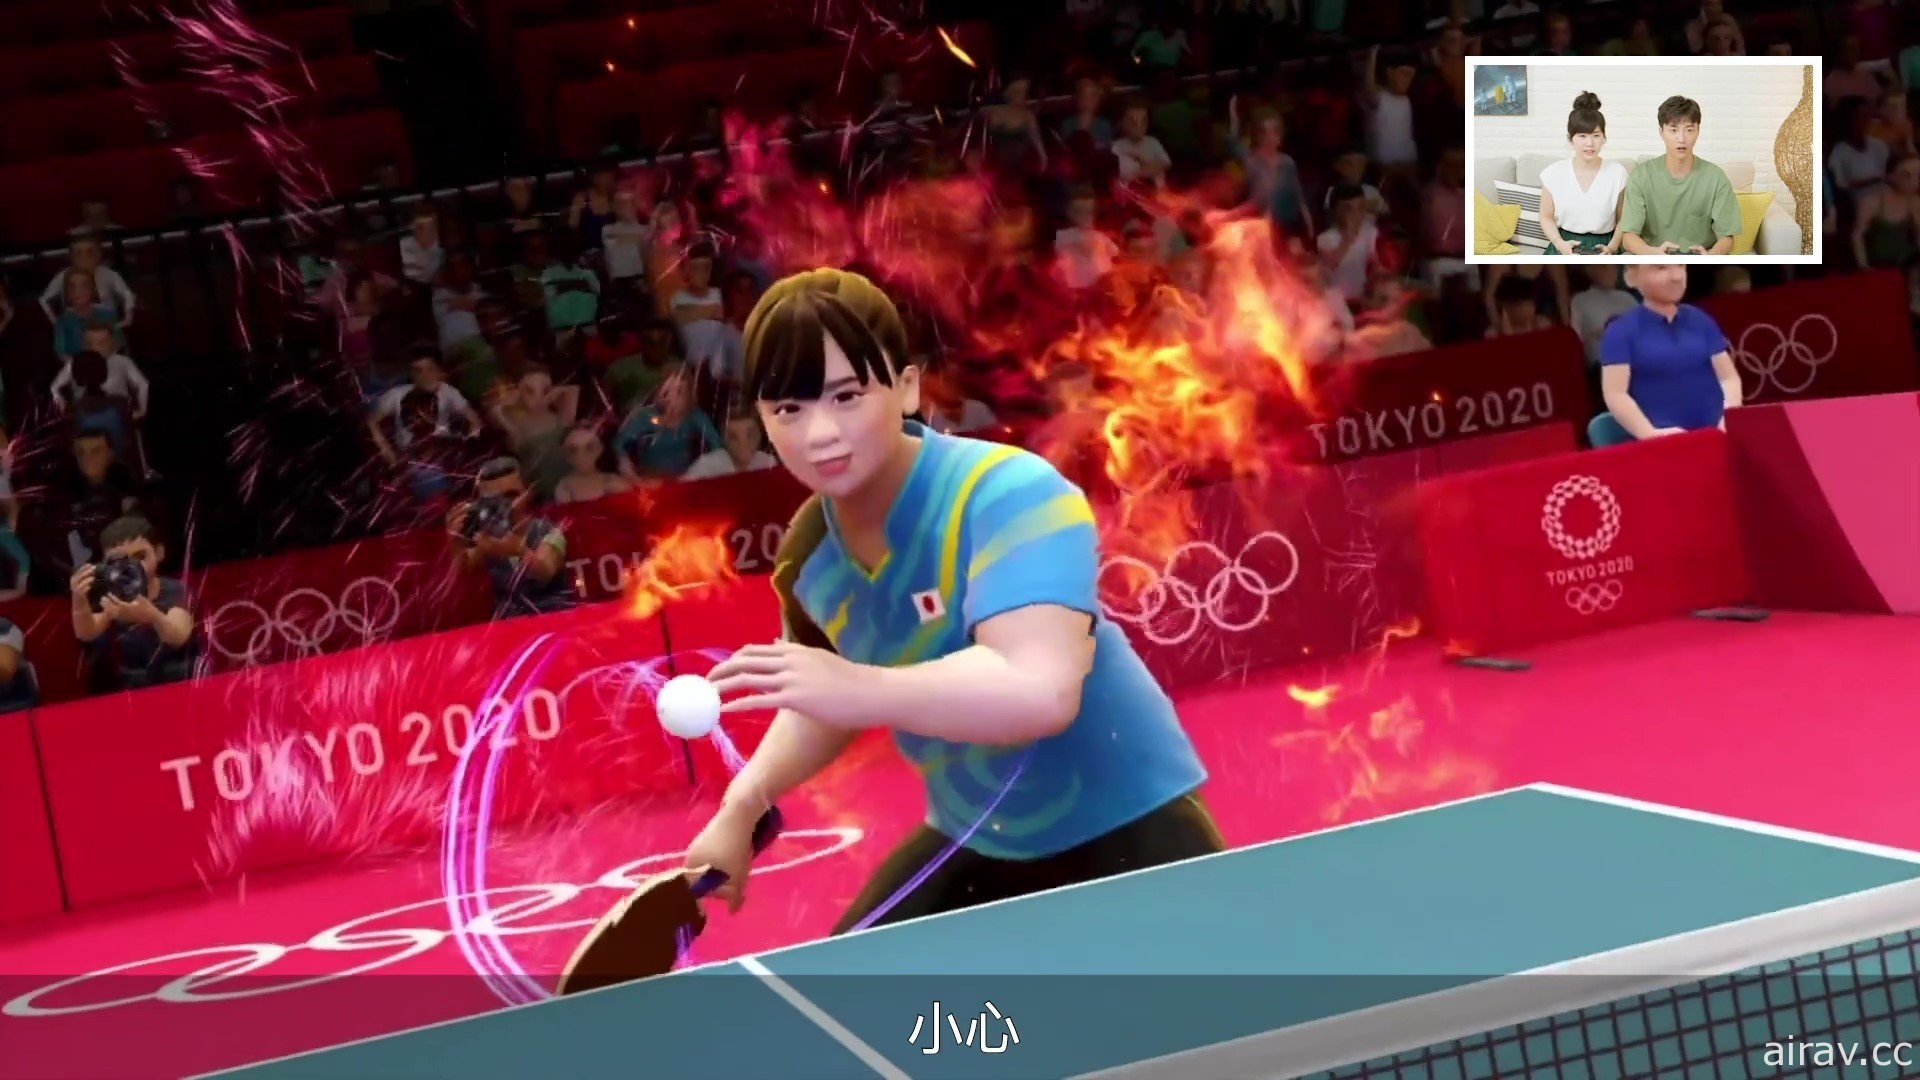 《2020 東京奧運 The Official Video Game》公開福原愛與江宏傑夫妻檔的遊戲實況影片